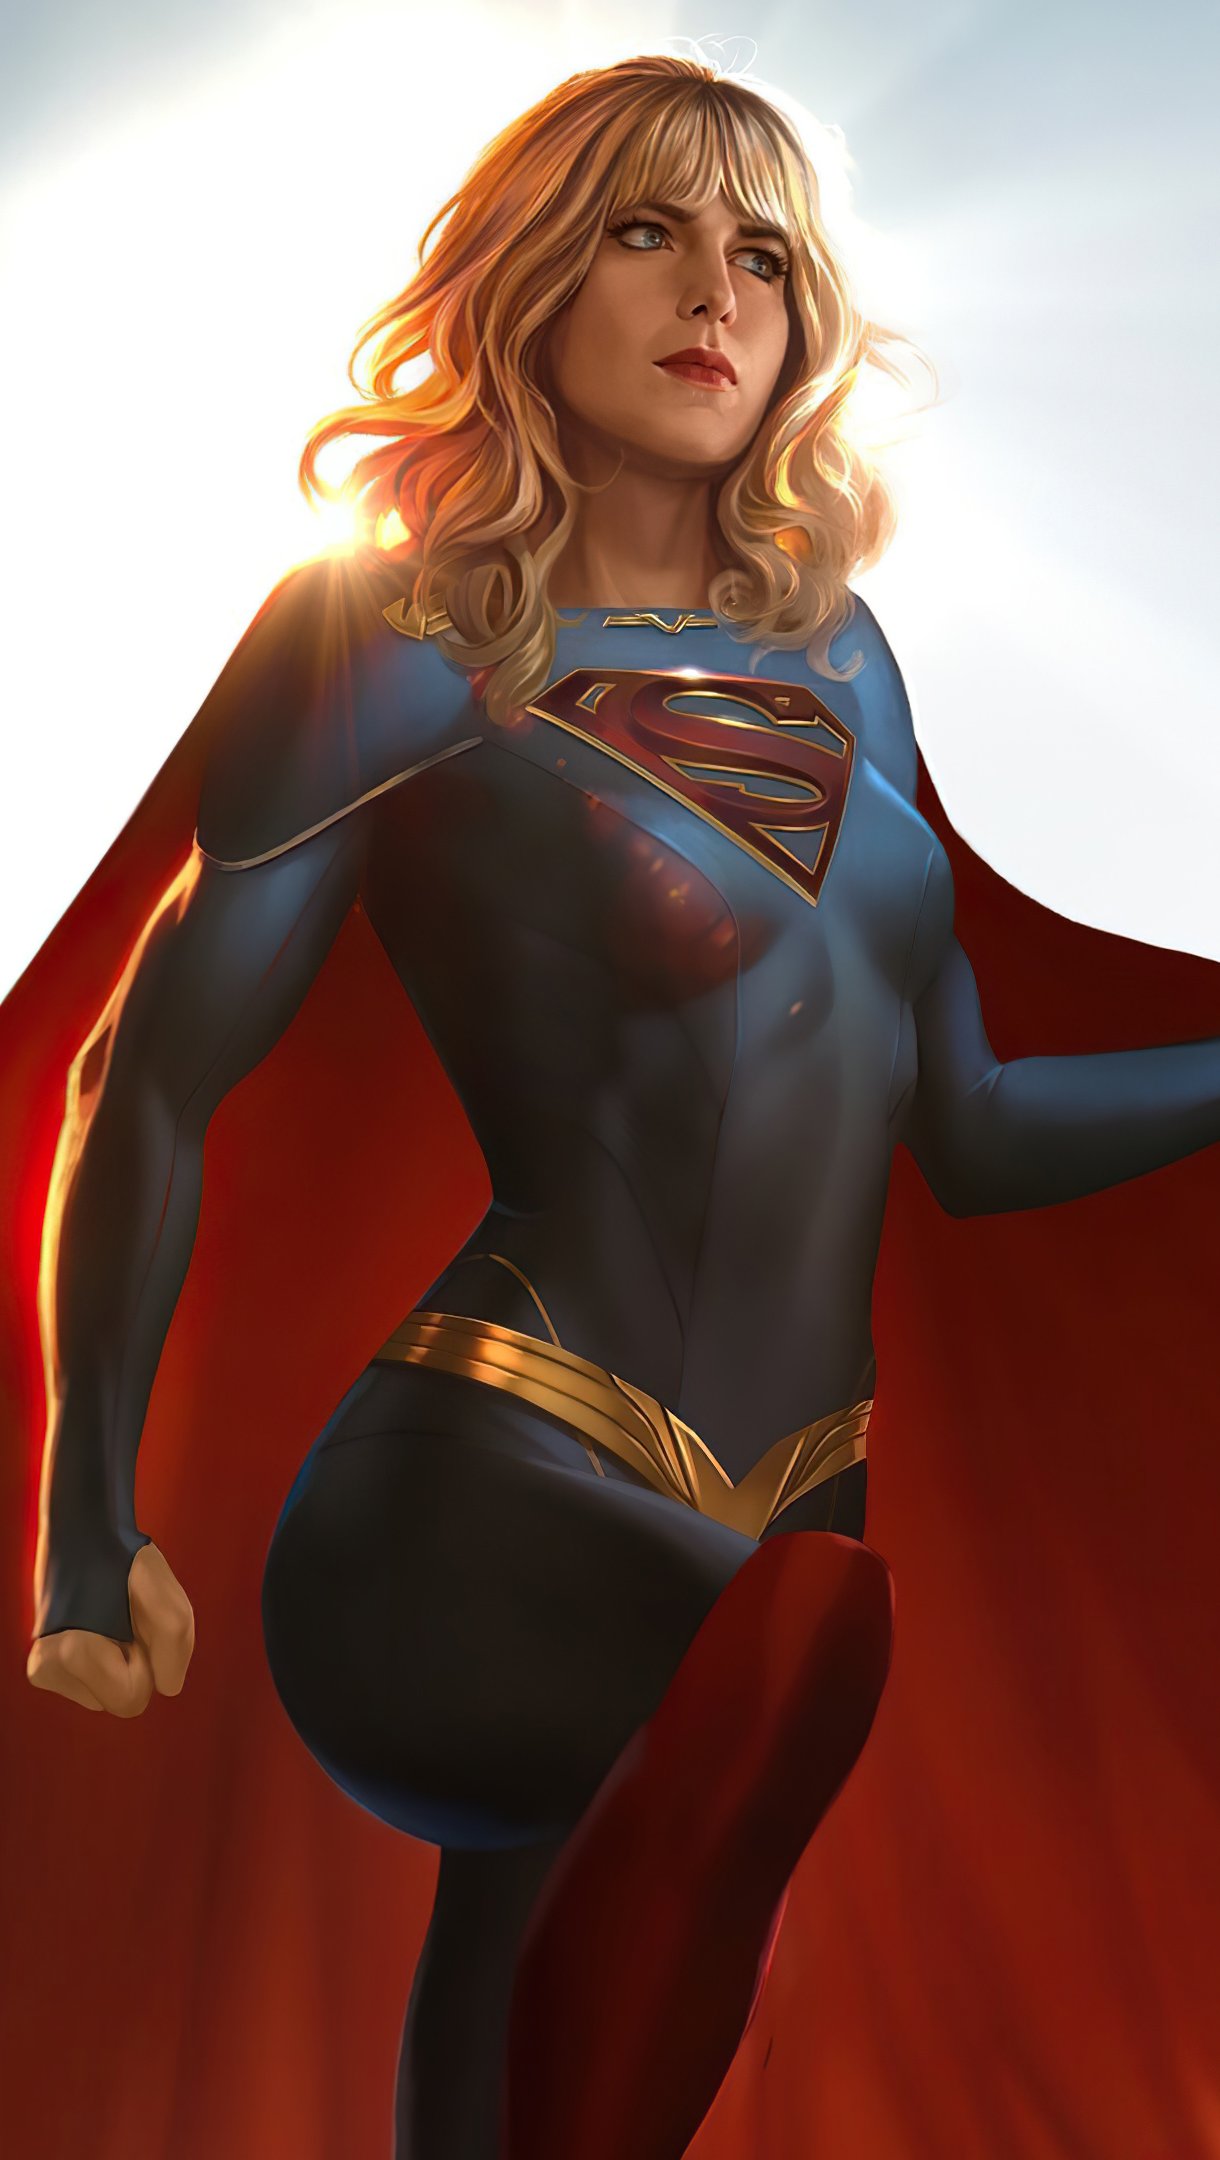 Fondos de pantalla Supergirl Fanmade Vertical